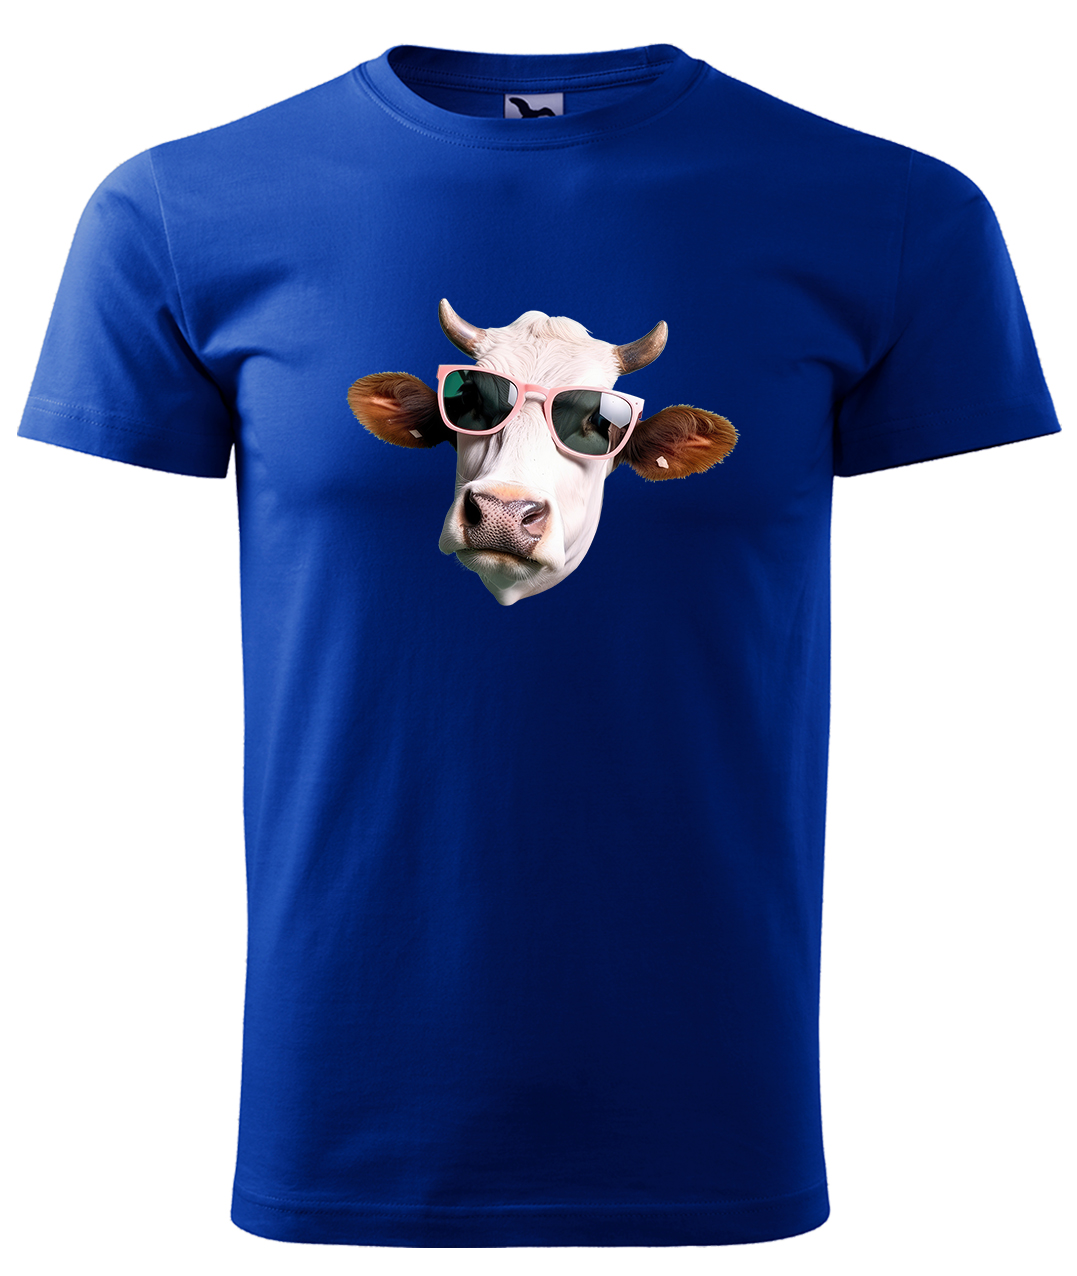 Dětské tričko s krávou - Kráva v brýlích Velikost: 8 let / 134 cm, Barva: Královská modrá (05), Délka rukávu: Krátký rukáv